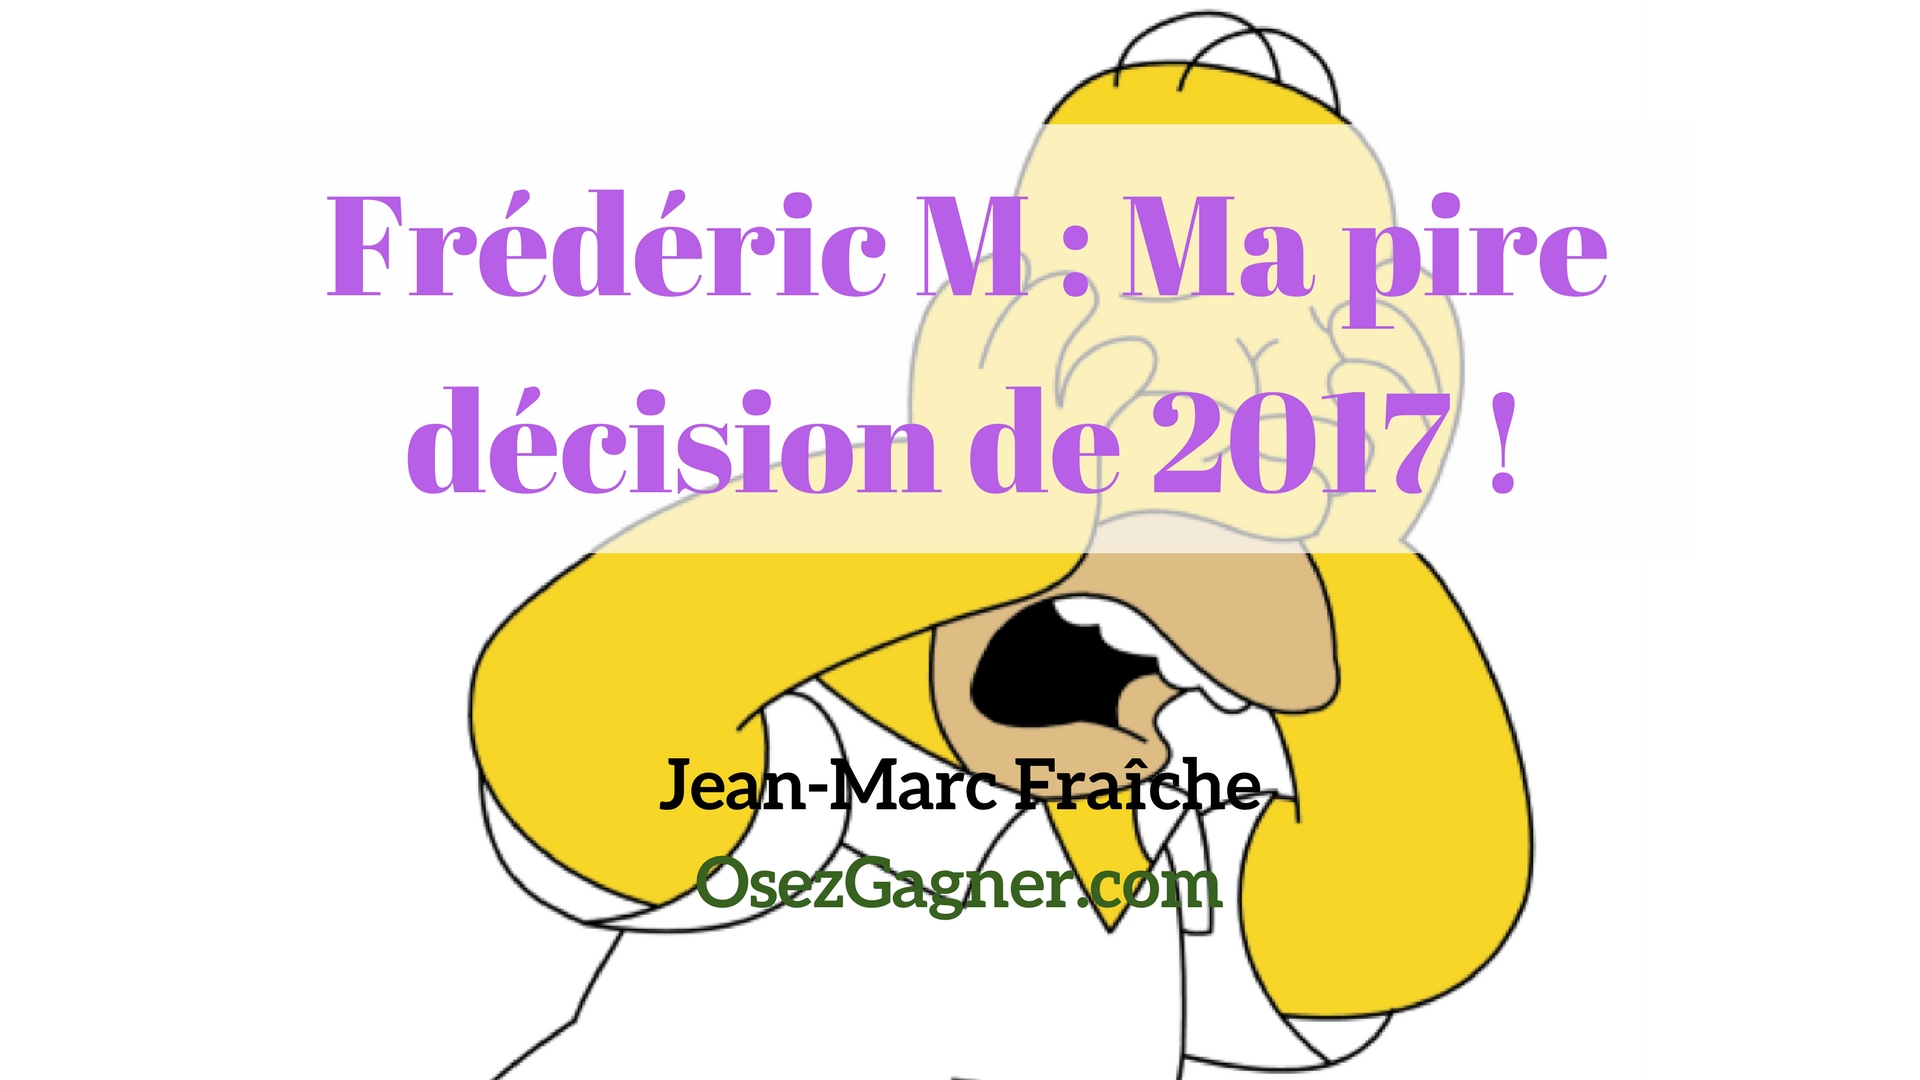 Frederic-M-Ma-pire-decision-de-2017-Pros-MLM-Jean-Marc-Fraiche-OsezGagner.com